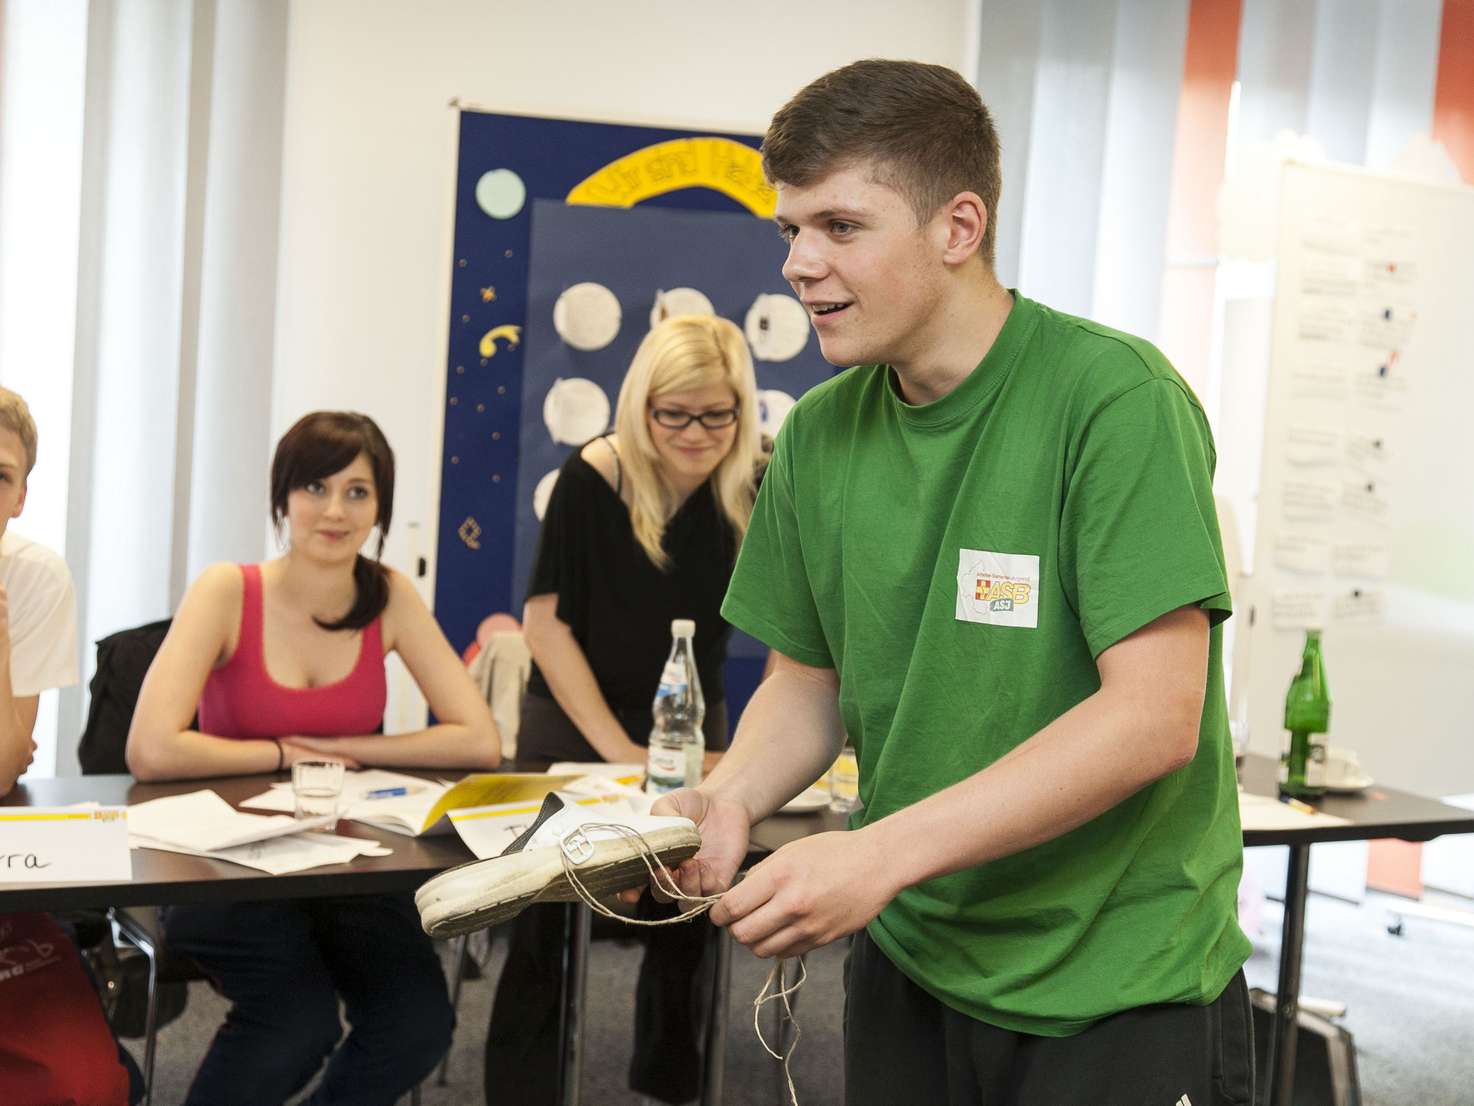 Ein junger Mann im grünen T-Shirt steht in einem Seminarraum und spricht. Im Hintergrund sieht man 3 junge Menschen an einem Tisch sitzen, die ihm zuhören. 